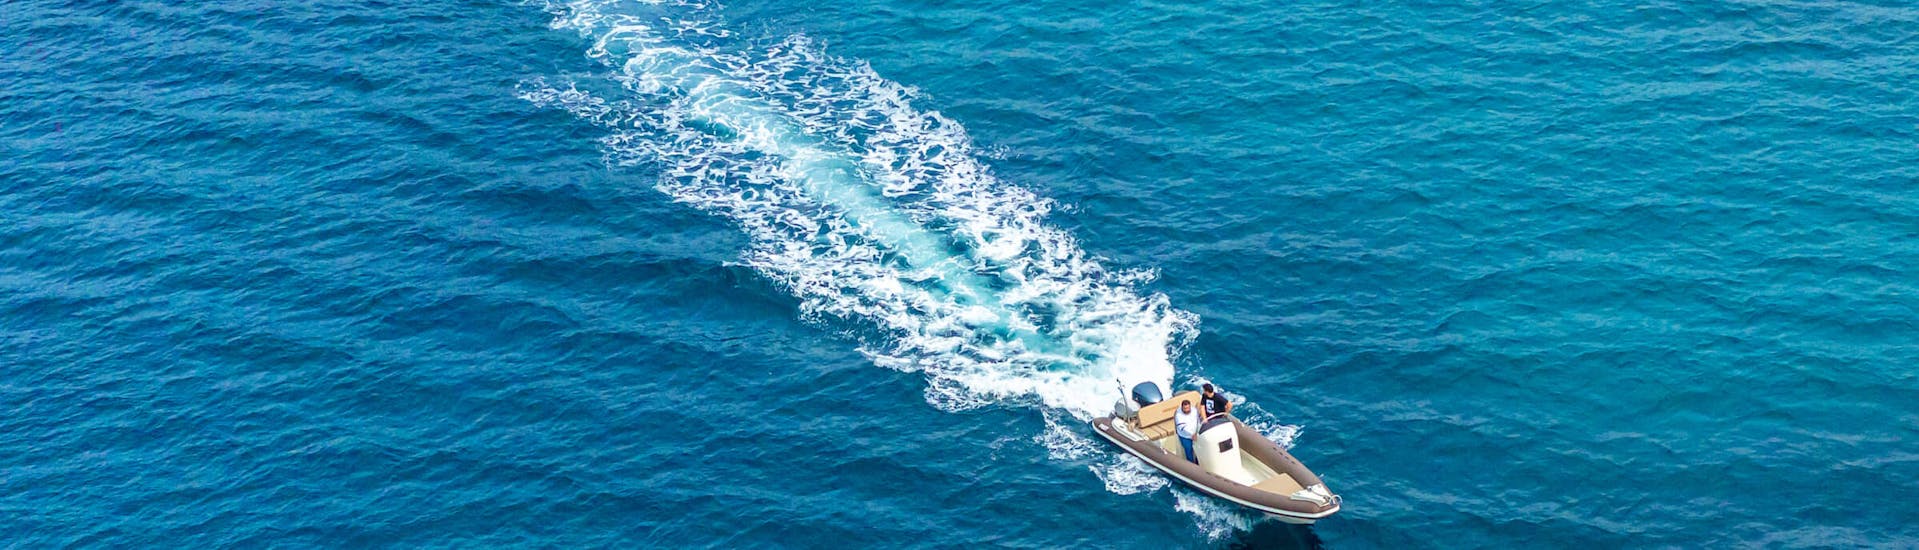 Eines der Boote auf dem offenen Meer während der Halbtägige private Bootstour zu den schönsten Stränden von Milos mit Venus of Milos.